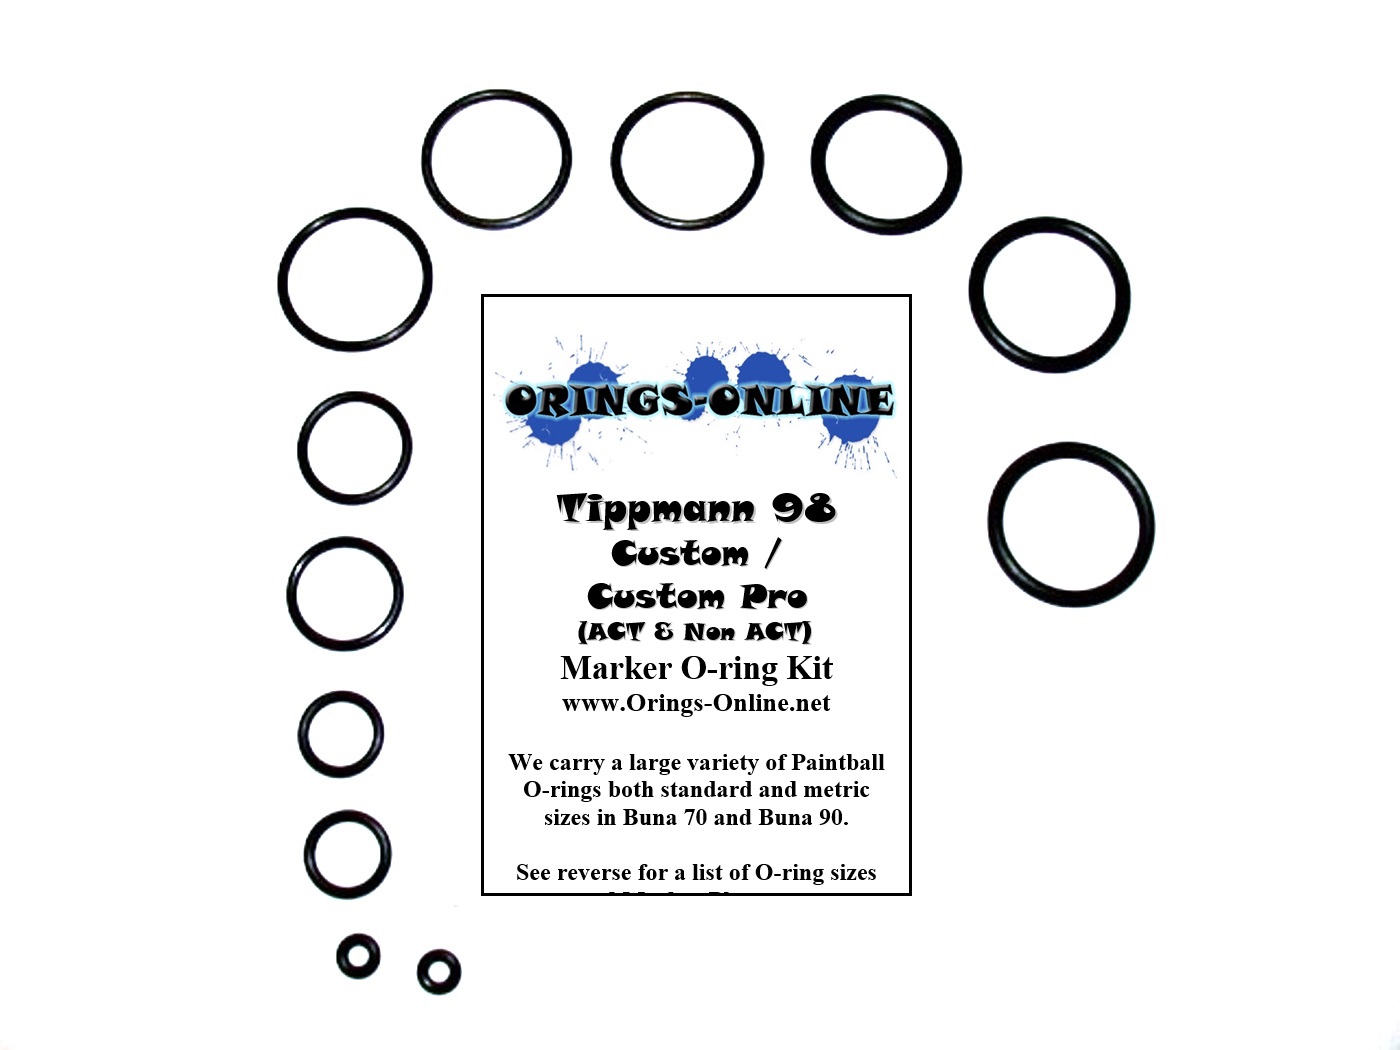 Tippmann 98 Custom / Custom Pro O-ring Kit